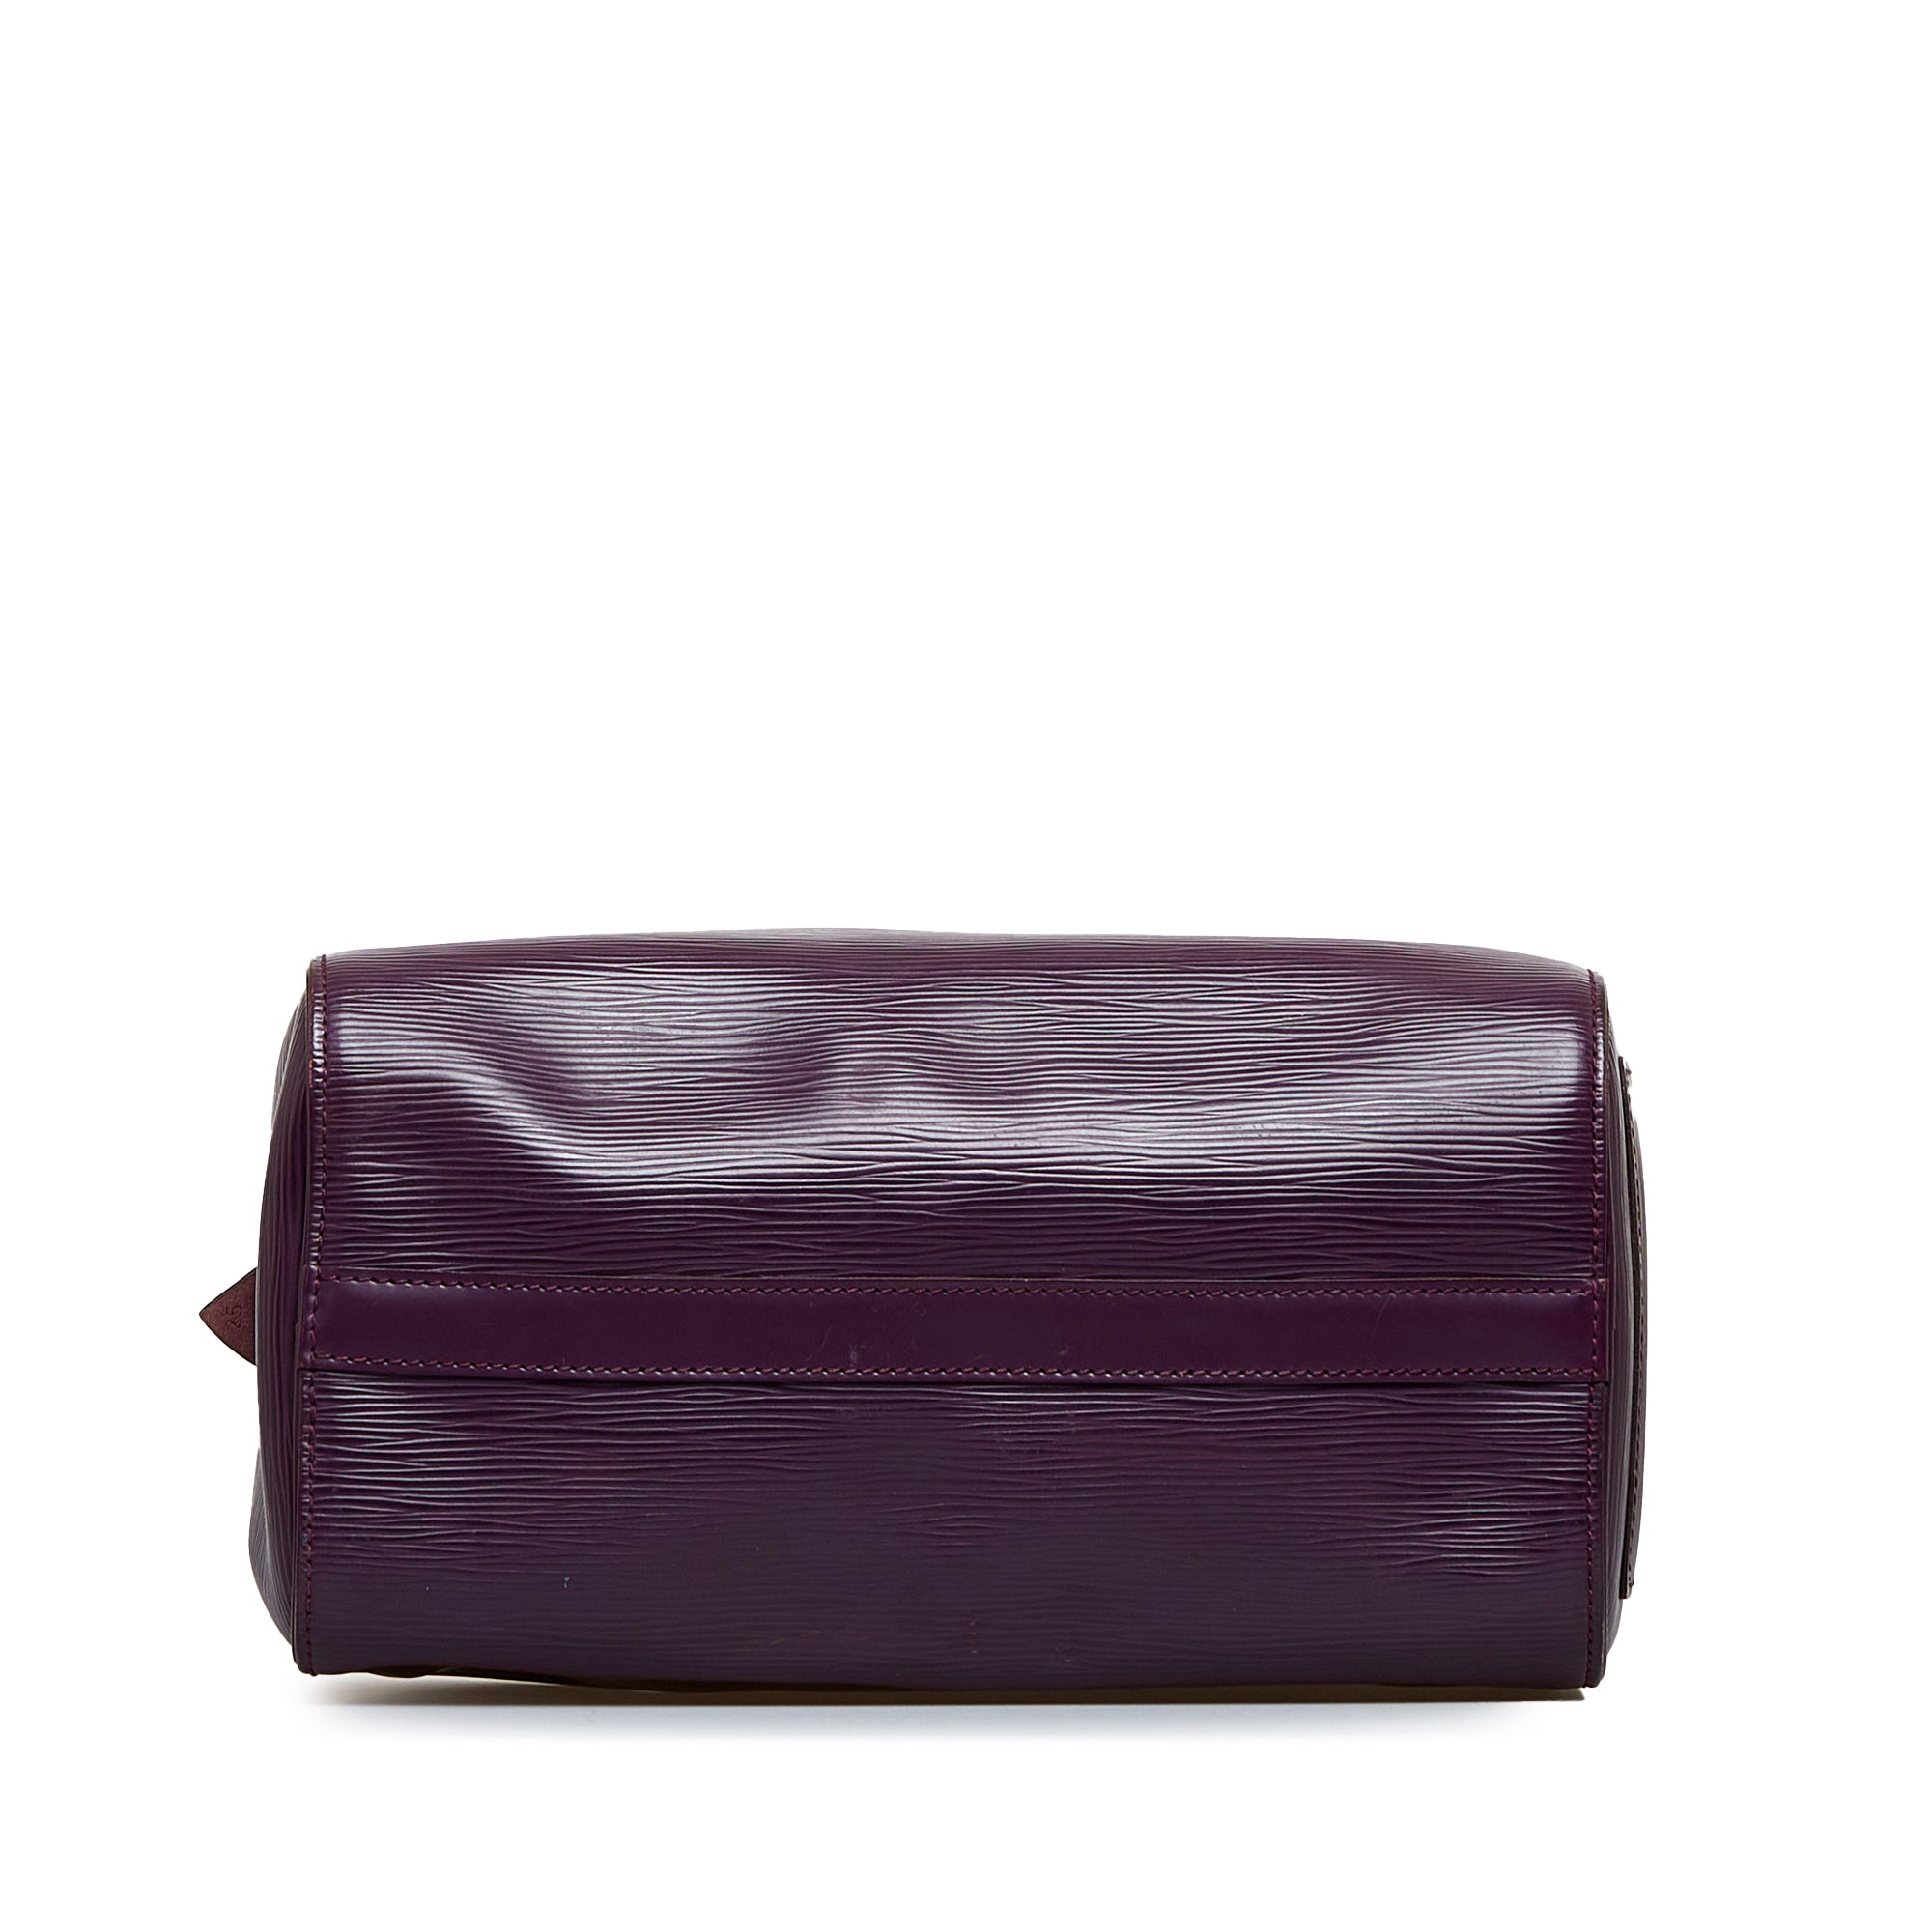 Louis Vuitton - Speedy 25 Epi Leather Cassis